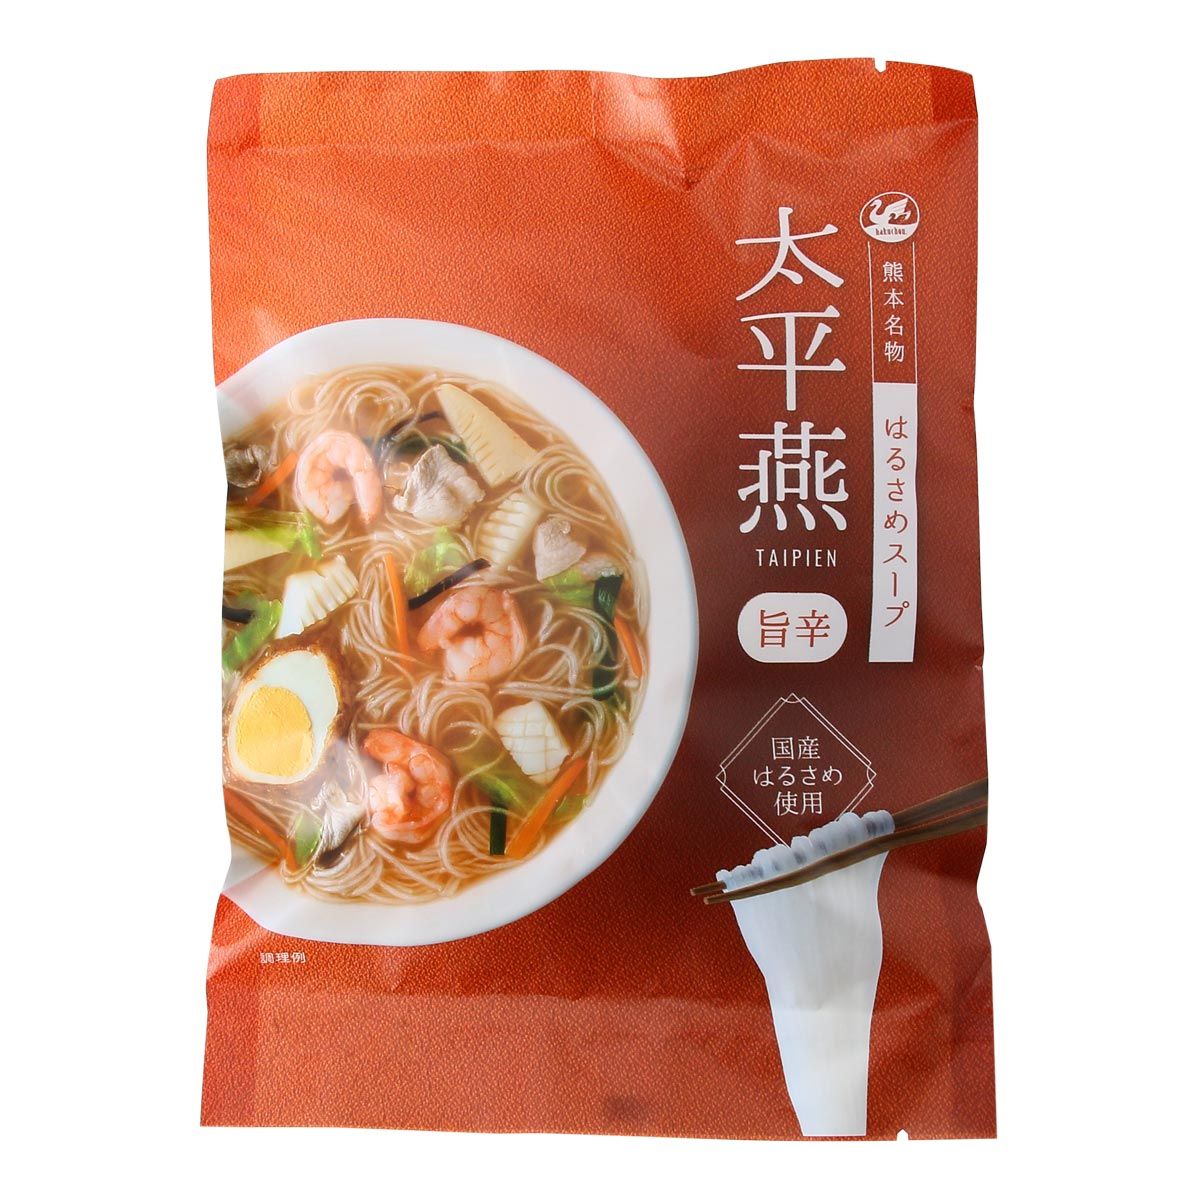 【商品説明】九州は熊本で生まれた中華風のはるさめスープです。 太平燕(タイピーエン)は、九州は熊本で生まれた中華風のはるさめスープです。 熊本県の自社工場で製造した国産春雨を使用しています。 国産はるさめ特有のもちもちとした食感や、天草の塩を使用した特性スープとの味がらみもお楽しみください。【原材料】はるさめ(さつまいもでん粉(国内製造)、じゃがいもでん粉)、スープ(食塩、味噌、デキストリン、酵母エキス、こうじ発酵調味料、植物油脂、香辛料、動物油脂、昆布粉末、砂糖、畜肉エキス、小麦粉、ネギパウダー、野菜エキス、たん白加水分解物)/調味料(アミノ酸等)、糊料(CMC)、パプリカ色素、香辛料抽出物、香料、酸味料、ミョウバン、(一部に小麦・乳成分・牛肉・ごま・ゼラチン・大豆・鶏肉・豚肉を含む)【原産地】日本【内容量】50g(はるさめ 40g、スープ 10g)【保存方法】常温 直射日光、高温多湿を避け常温で保存【アレルギー】小麦、乳成分、牛肉、ごま、ゼラチン、大豆、鶏肉、豚肉